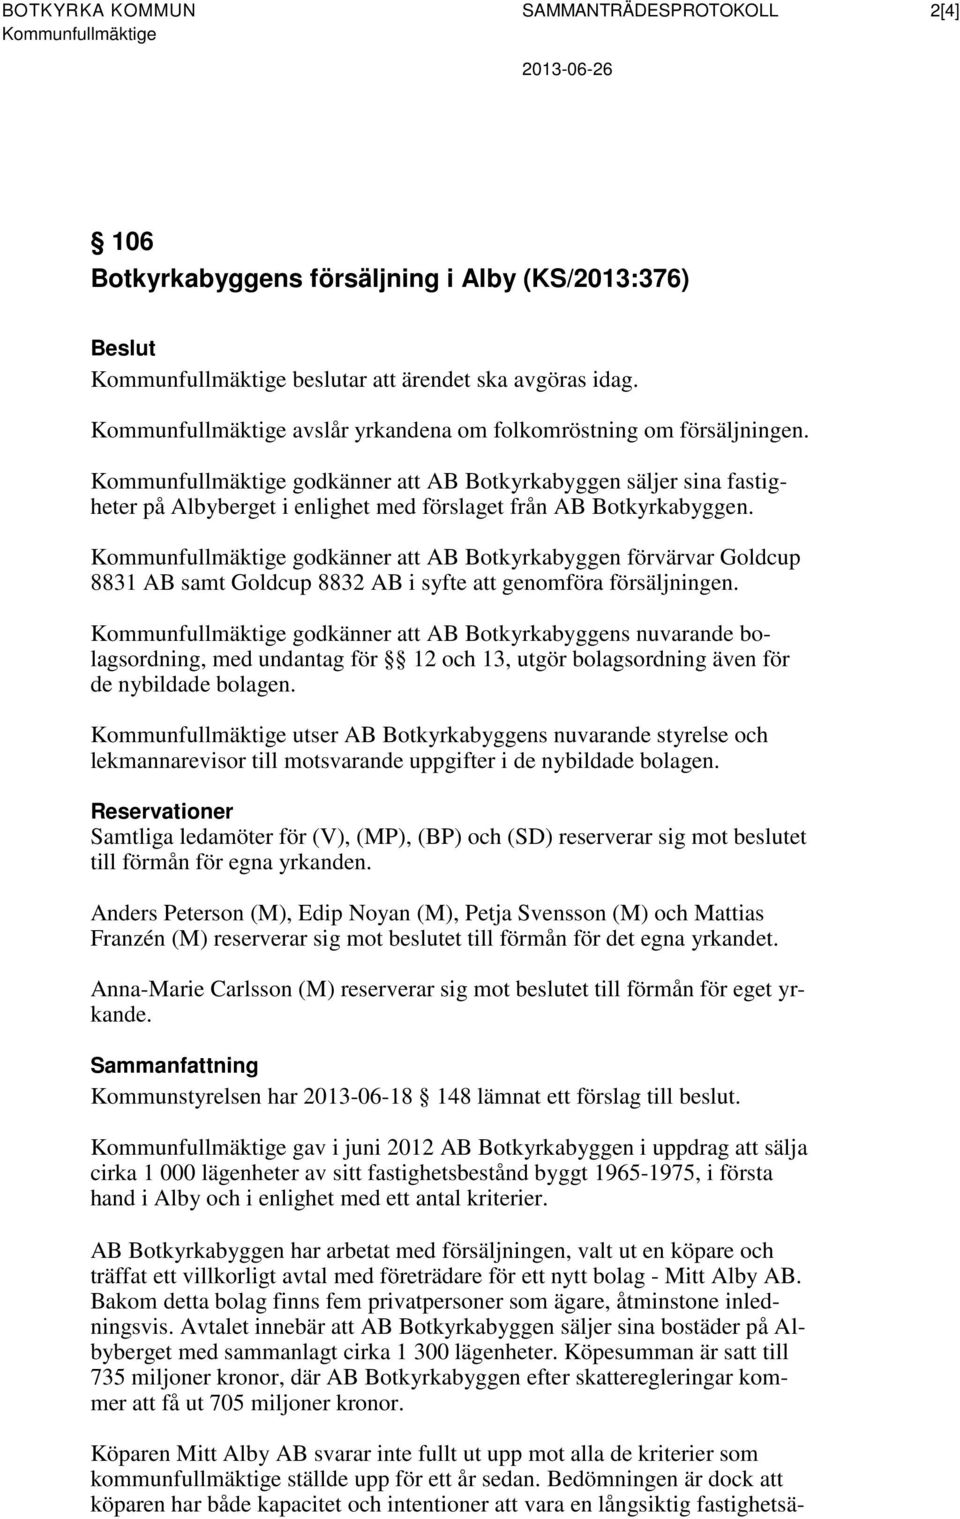 Kommunfullmäktige godkänner att AB Botkyrkabyggen säljer sina fastigheter på Albyberget i enlighet med förslaget från AB Botkyrkabyggen.